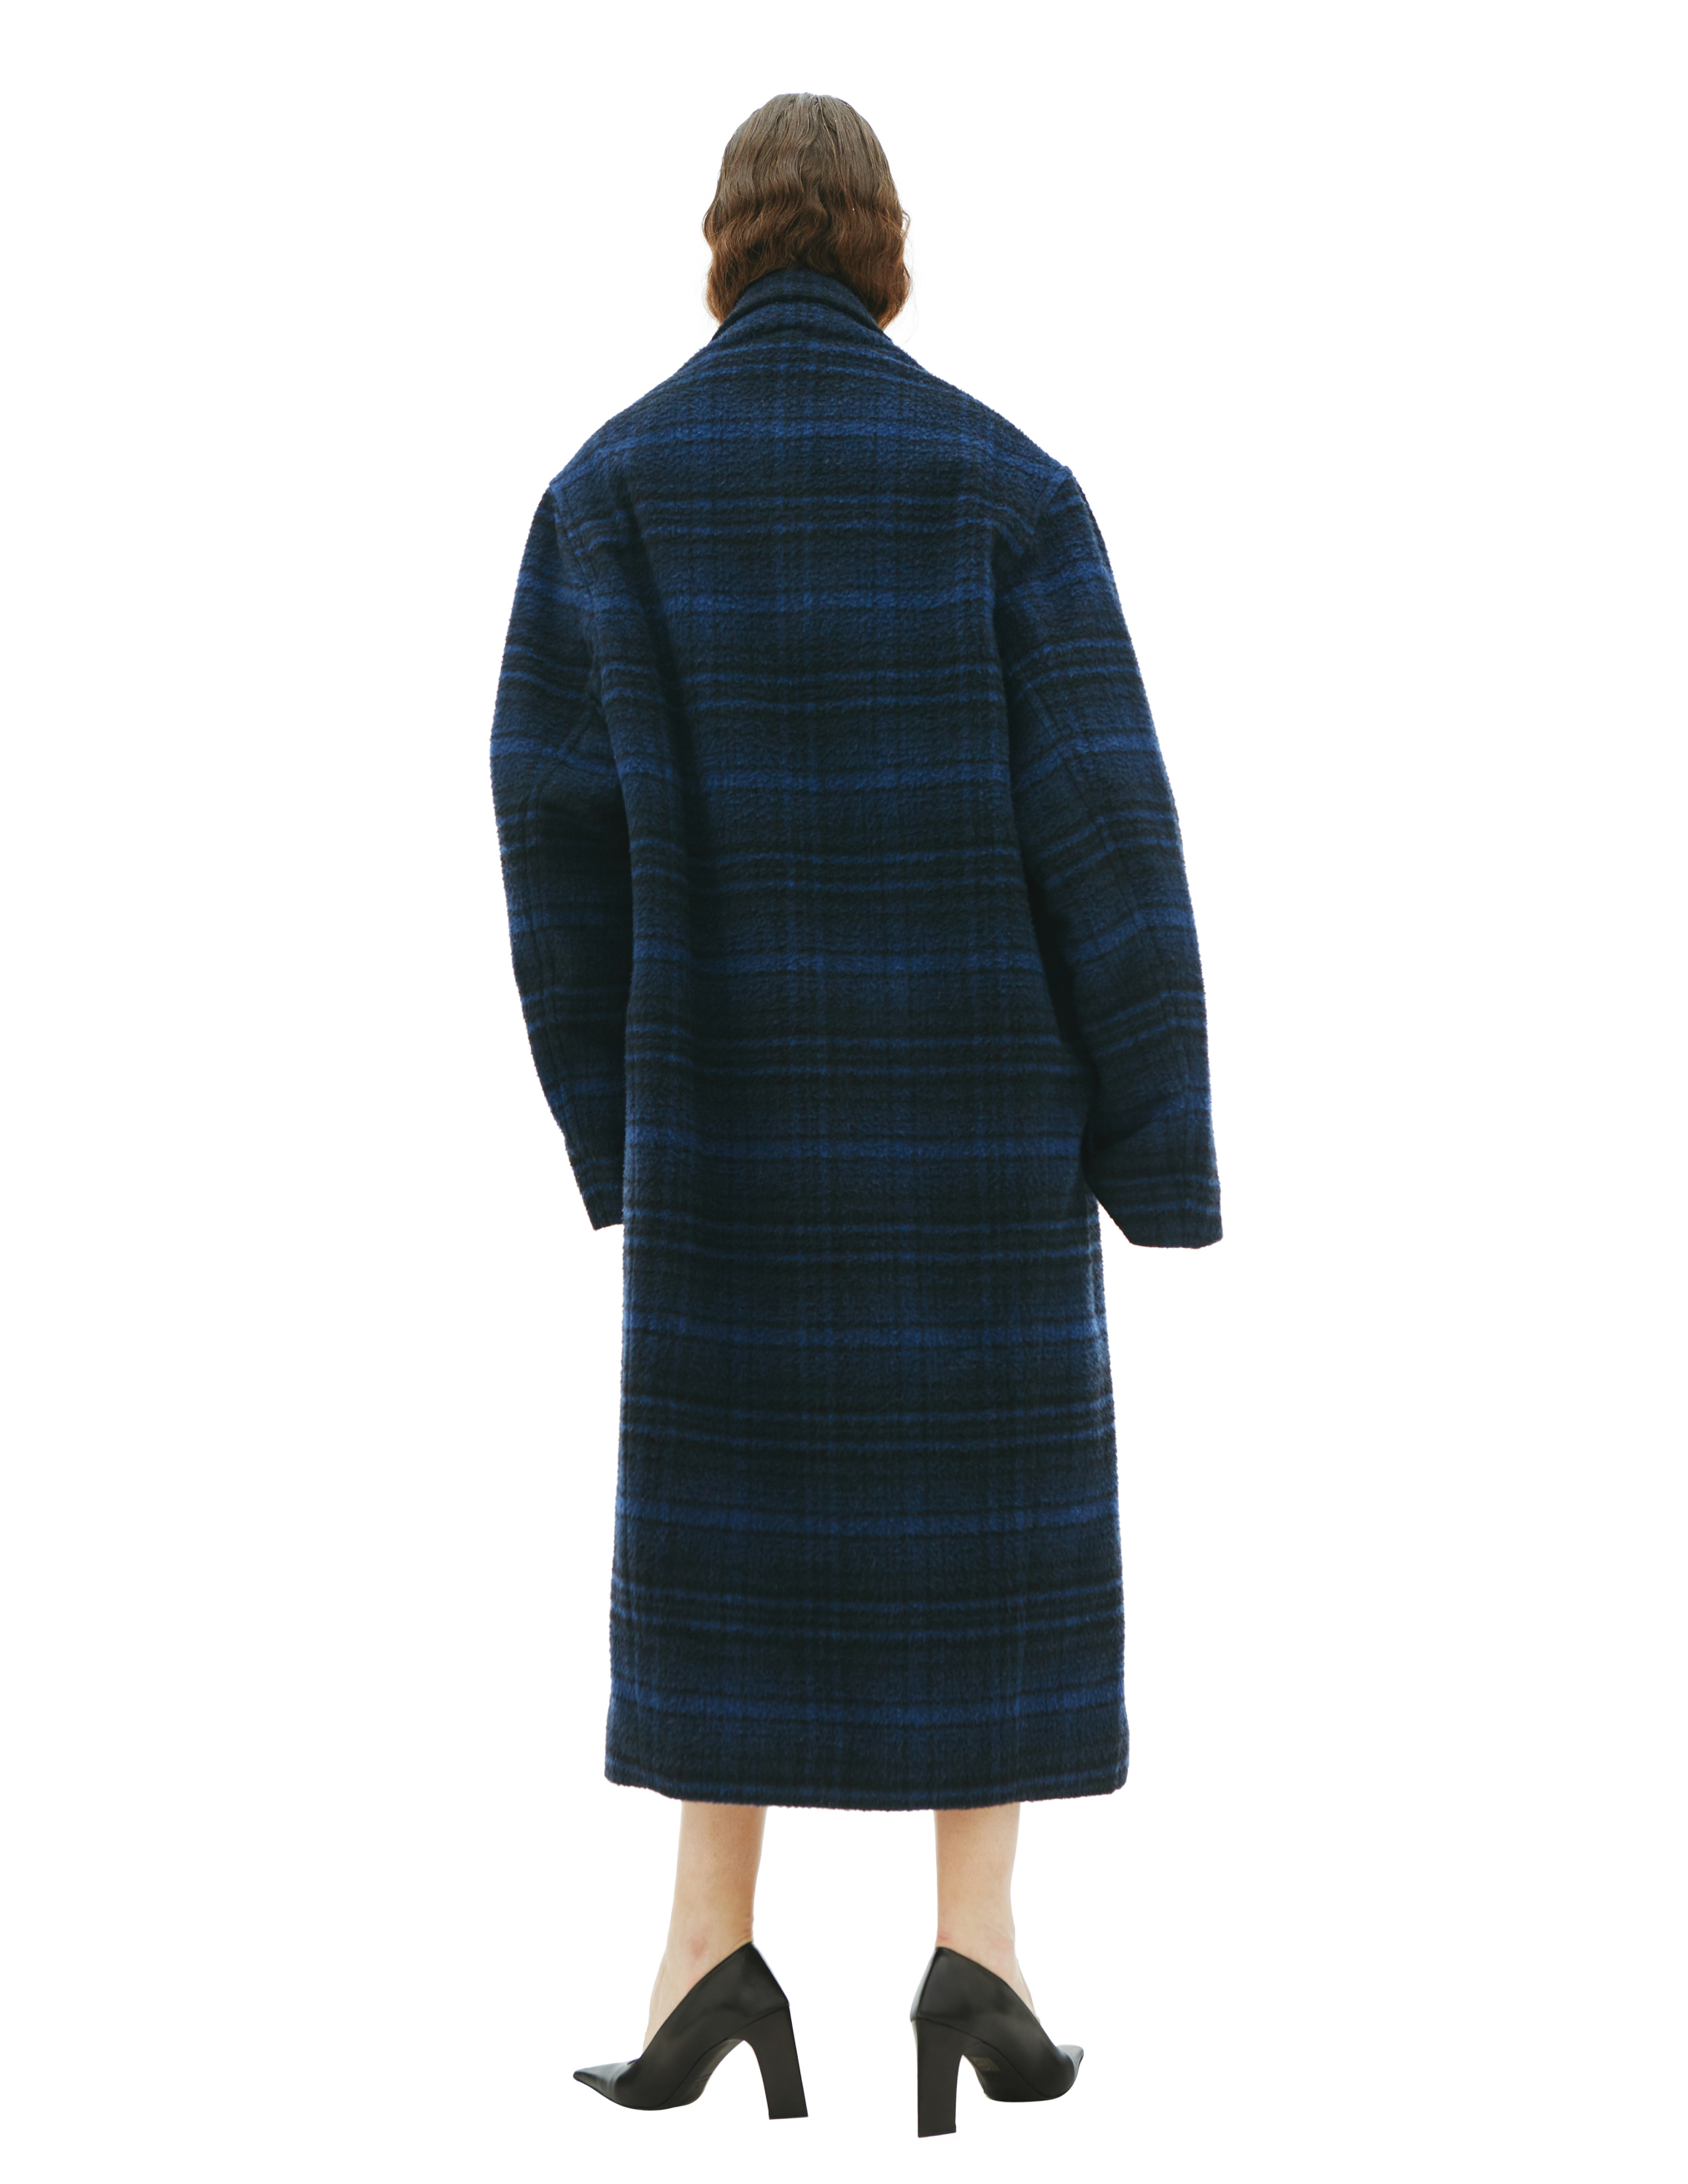 Шерстяное пальто в винтажную клетку Balenciaga 681163/TLU11/8060, размер 3;2 681163/TLU11/8060 - фото 3